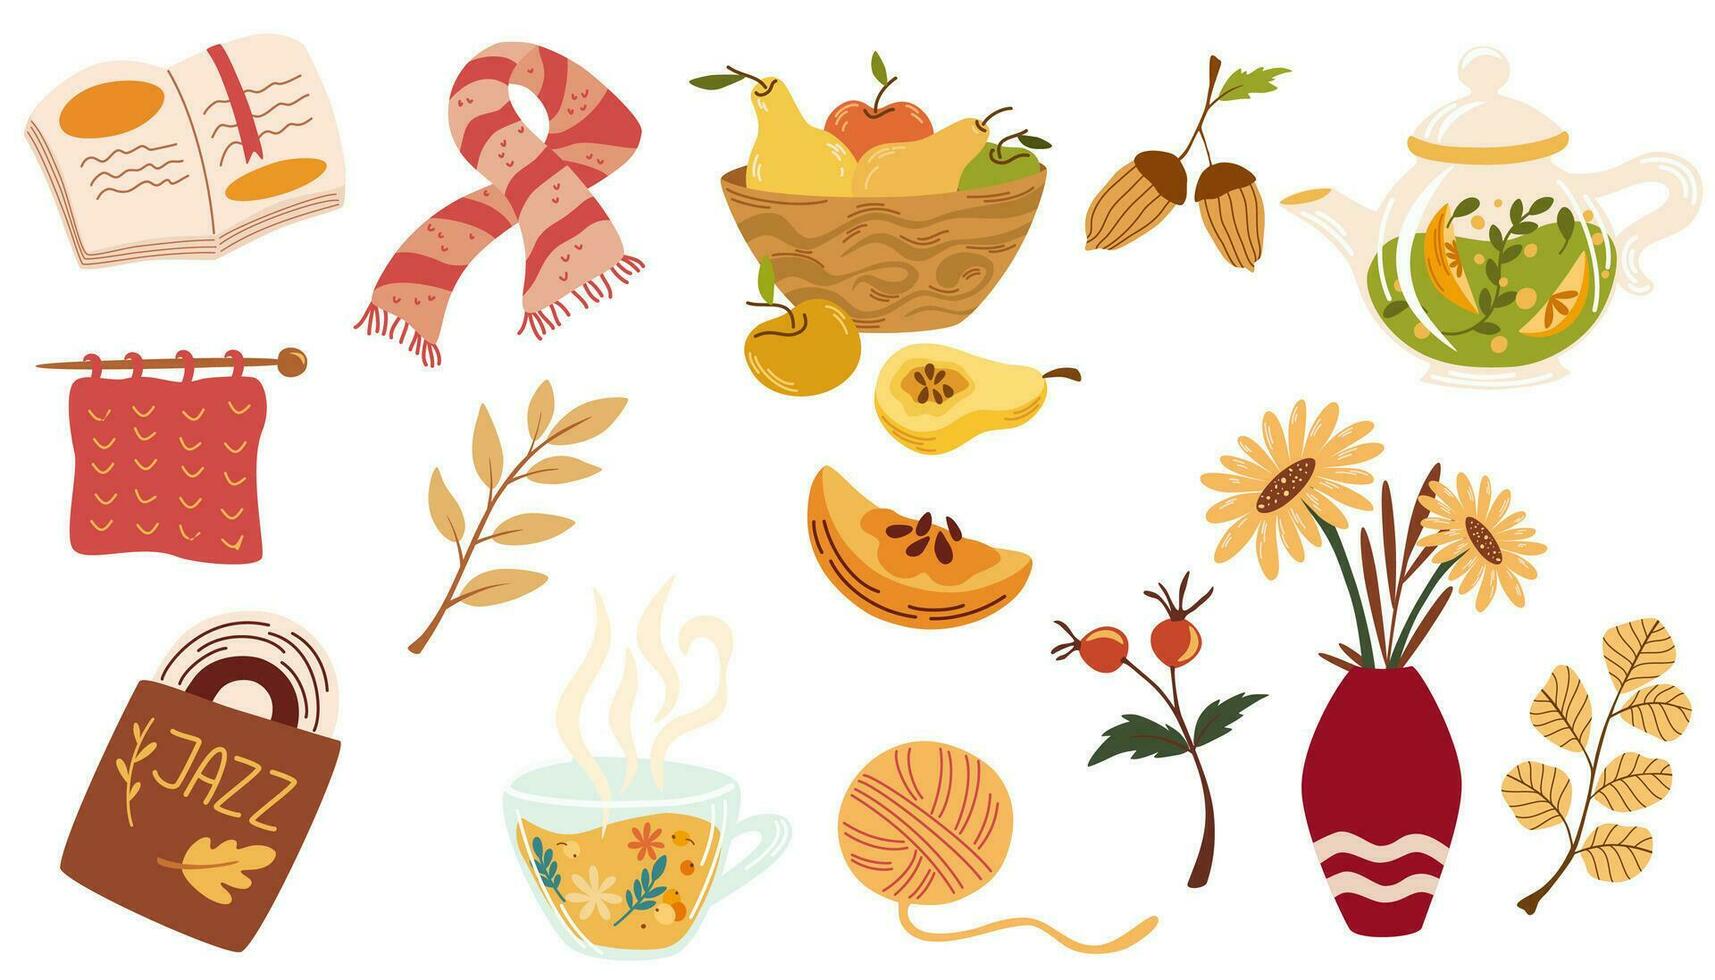 knus herfst. reeks van verschillend herfst elementen, bessen, thee, warm sjaal, een vinyl dossier, een boeket van bloemen in een vaas, een fruit mand, een boek en gebladerte. vector illustratie